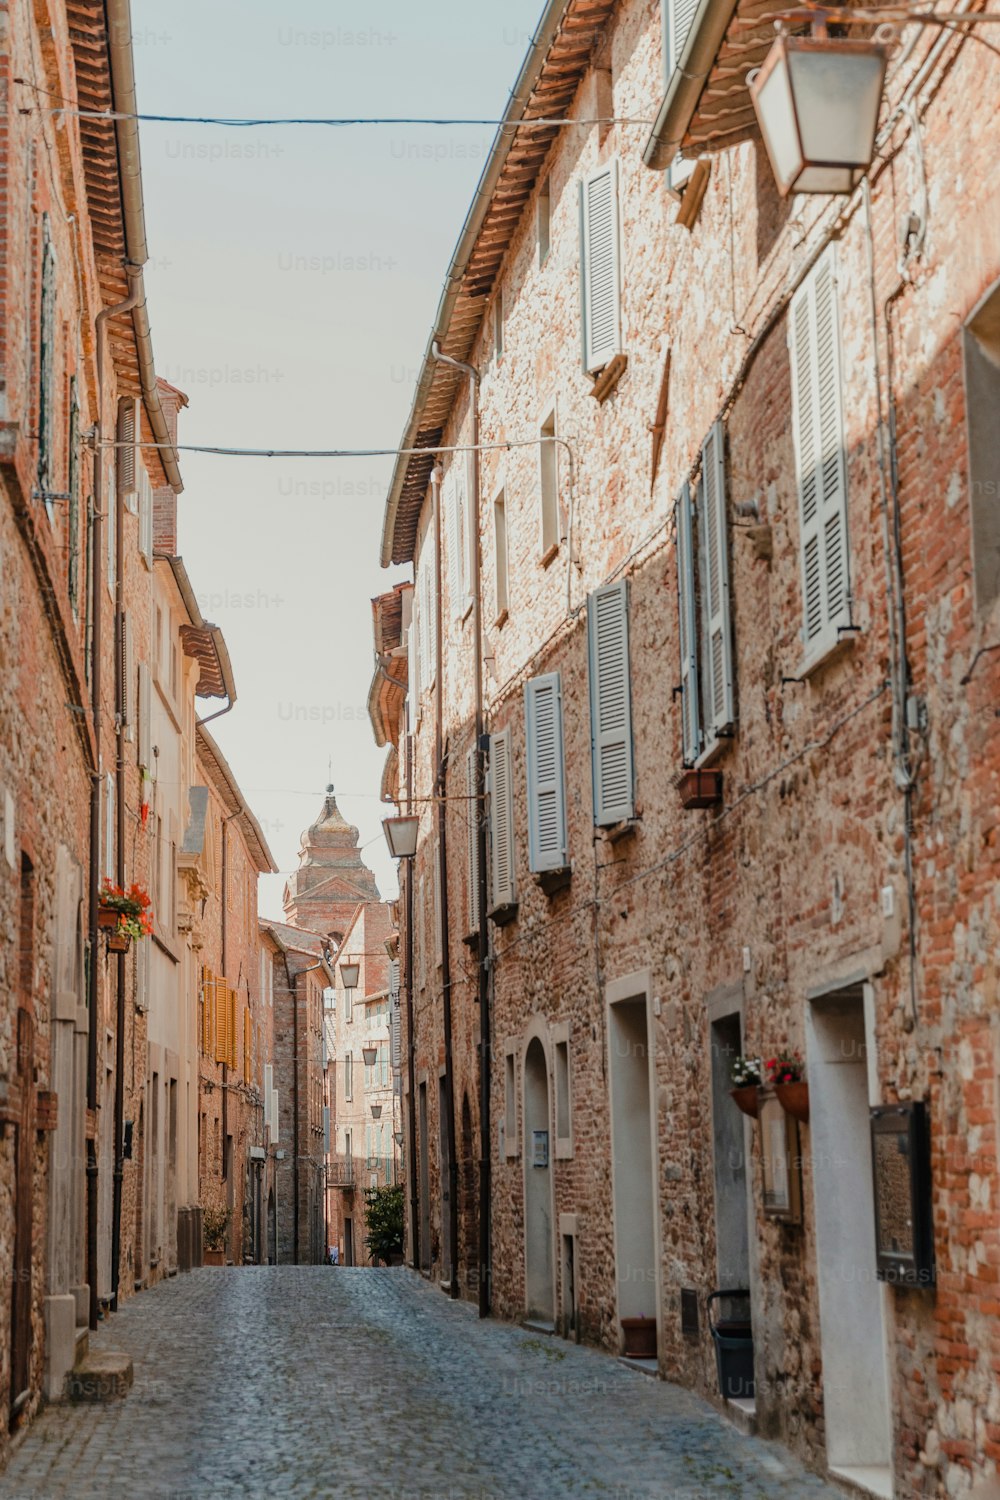 Une rue pavée dans une vieille ville européenne